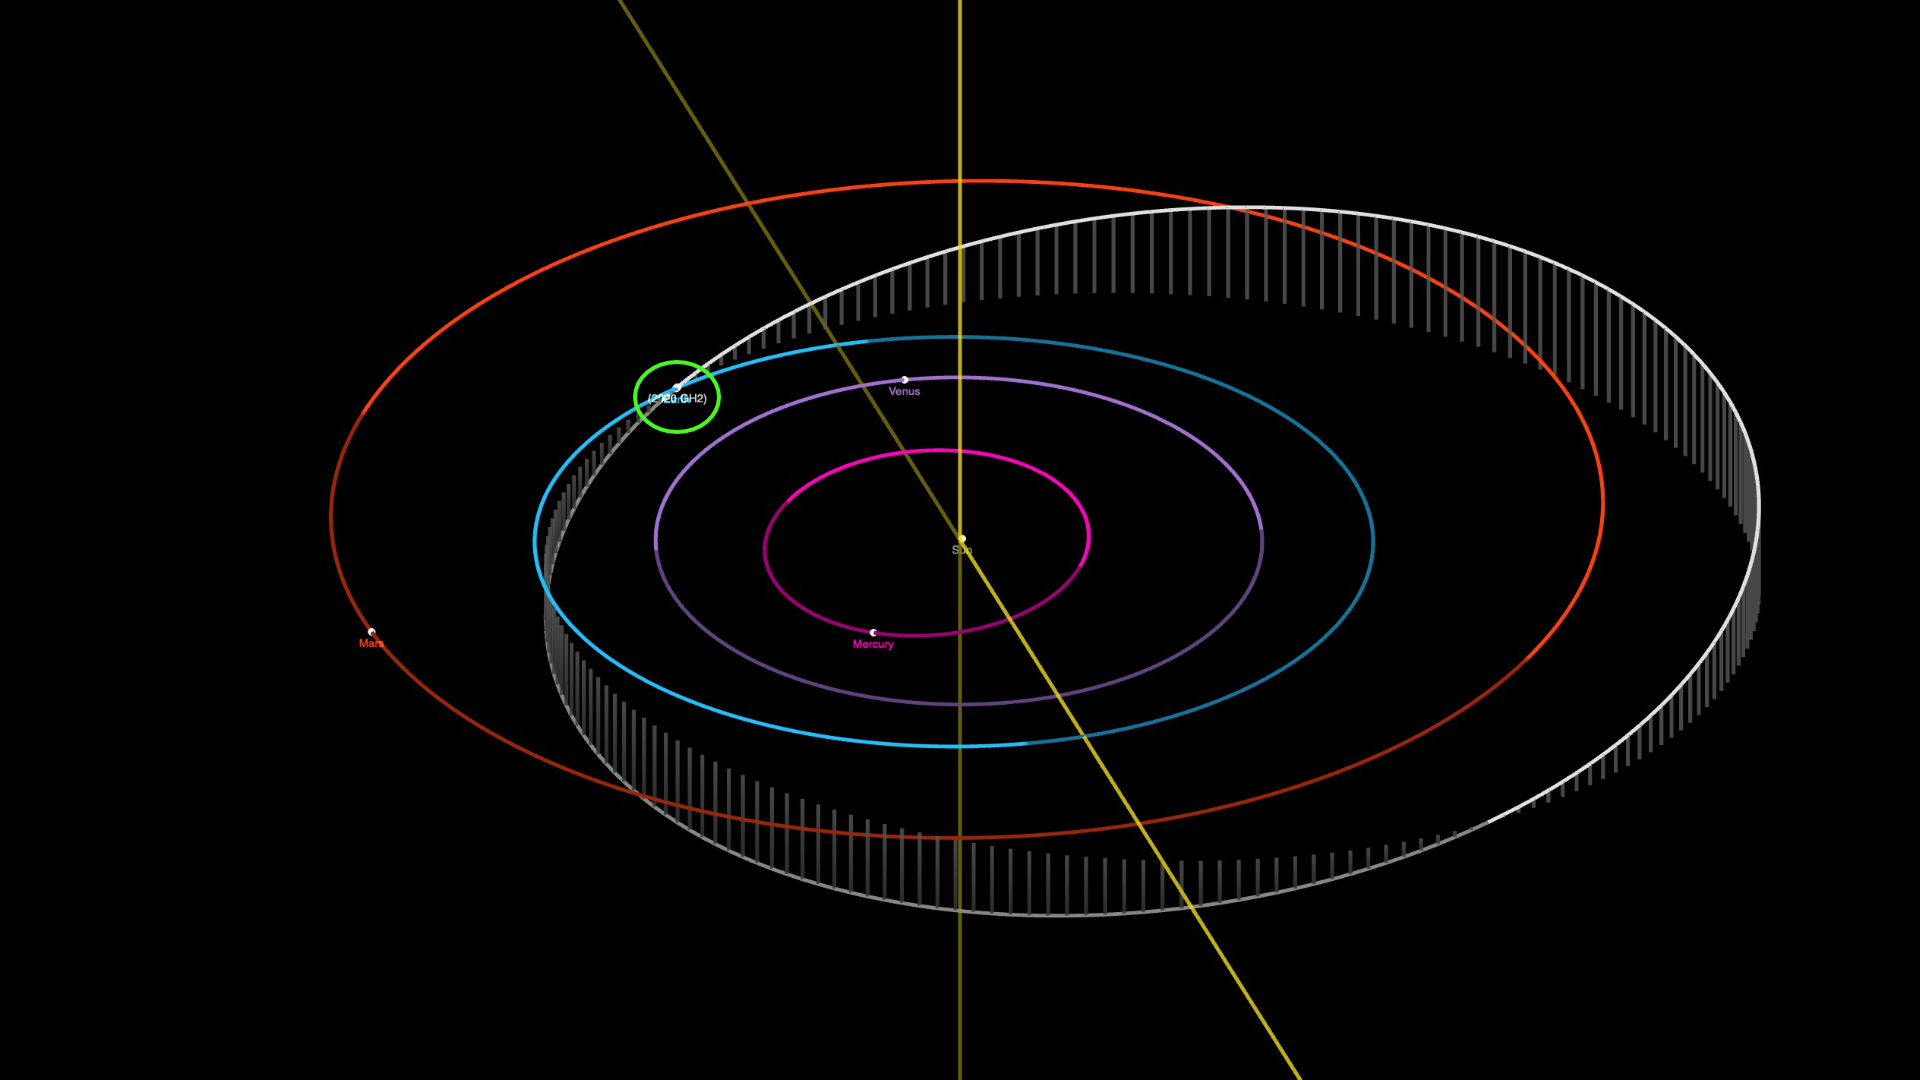 E se le cose cominciassero a precipitare...? - Pagina 192 Orbite-2020-gh2-asteroide-espace-systeme-solairee